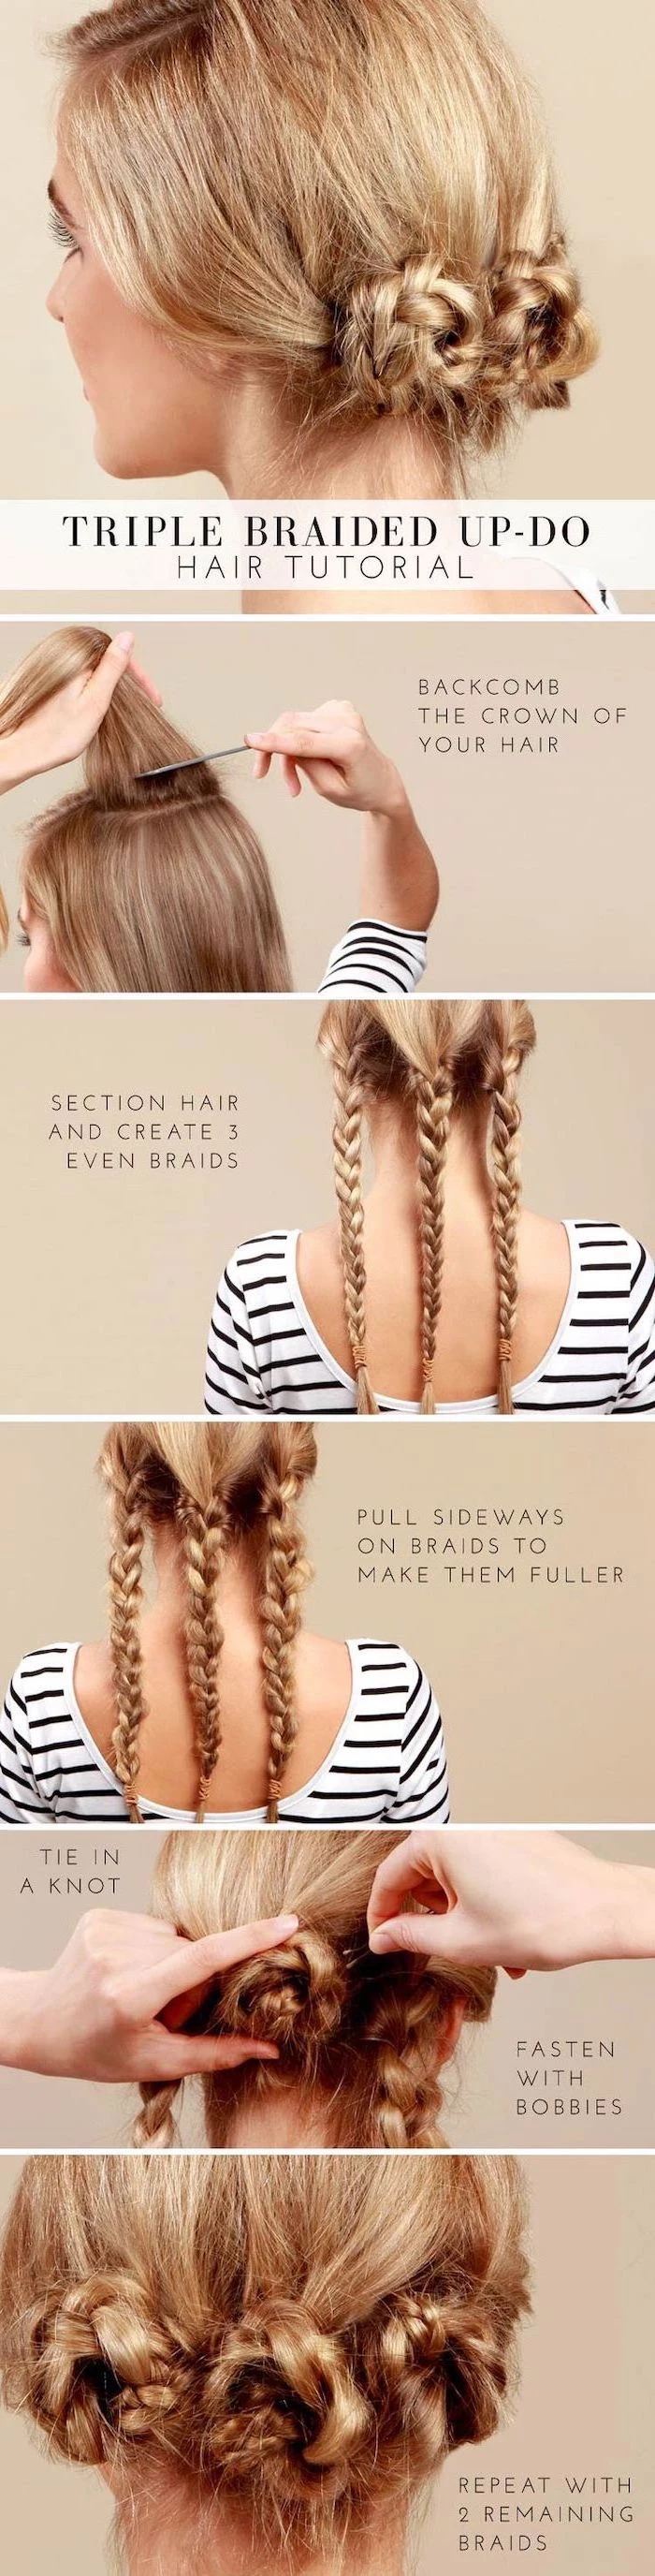 braid hairstyles, step by step, diy tutorial, triple braided updo, blonde hair